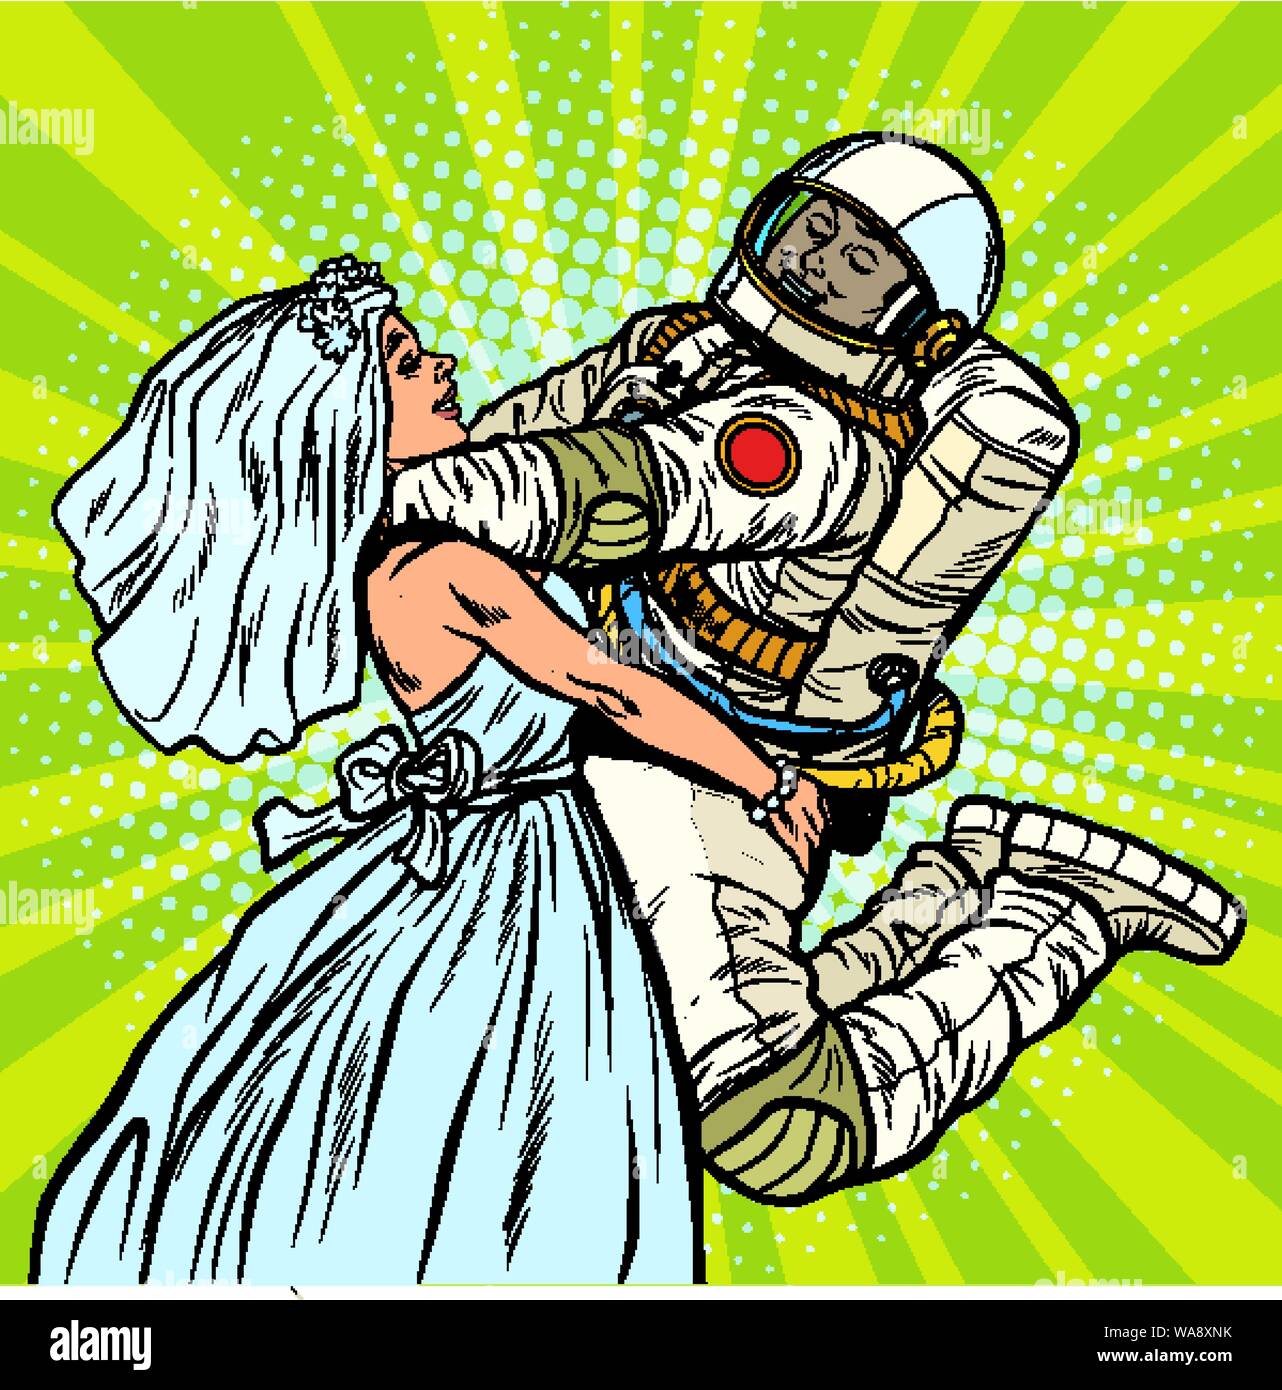 Braut und Bräutigam bei der Hochzeit. Astronaut und seine Frau. Pop Art retro Vektor illustration Zeichnung Stock Vektor